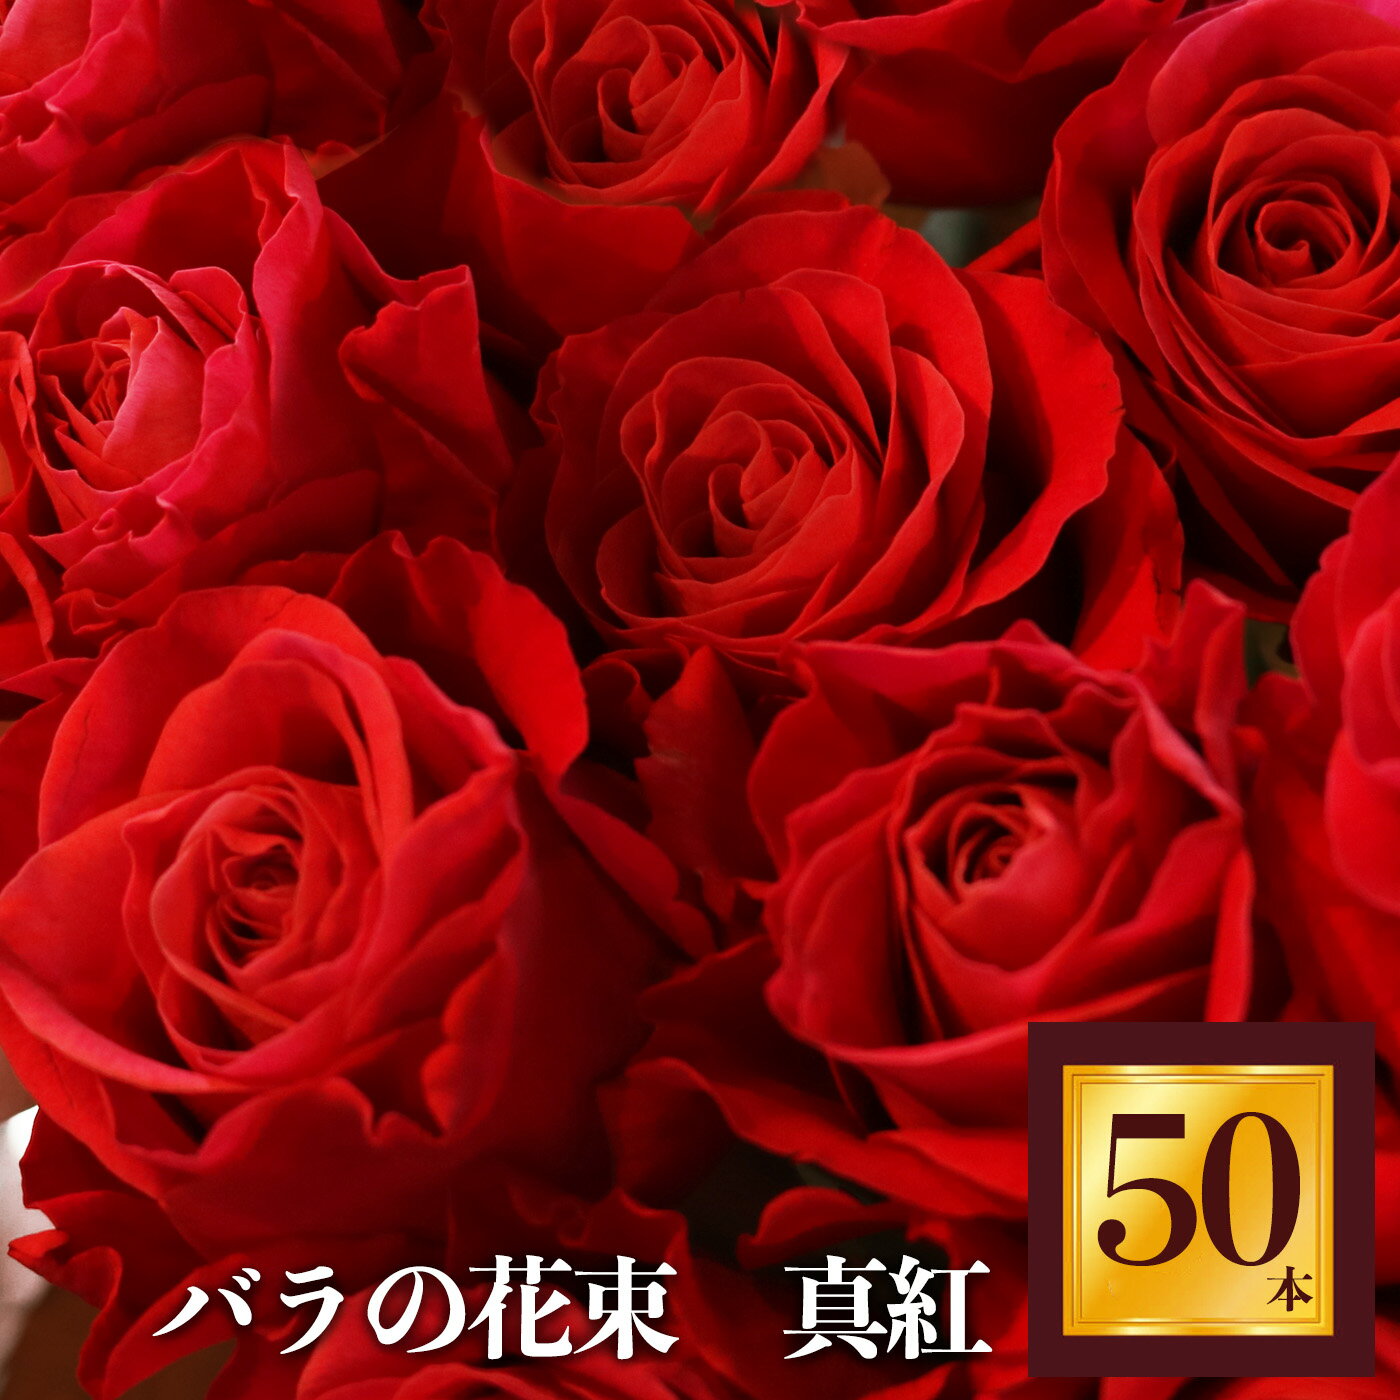 5位! 口コミ数「0件」評価「0」Heguri Rose バラの花束 （赤バラ 50本）ローズ フラワー 薔薇 新鮮 高品質 豪華 真紅のバラ 綺麗 平群のバラ 花束 平群ブ･･･ 